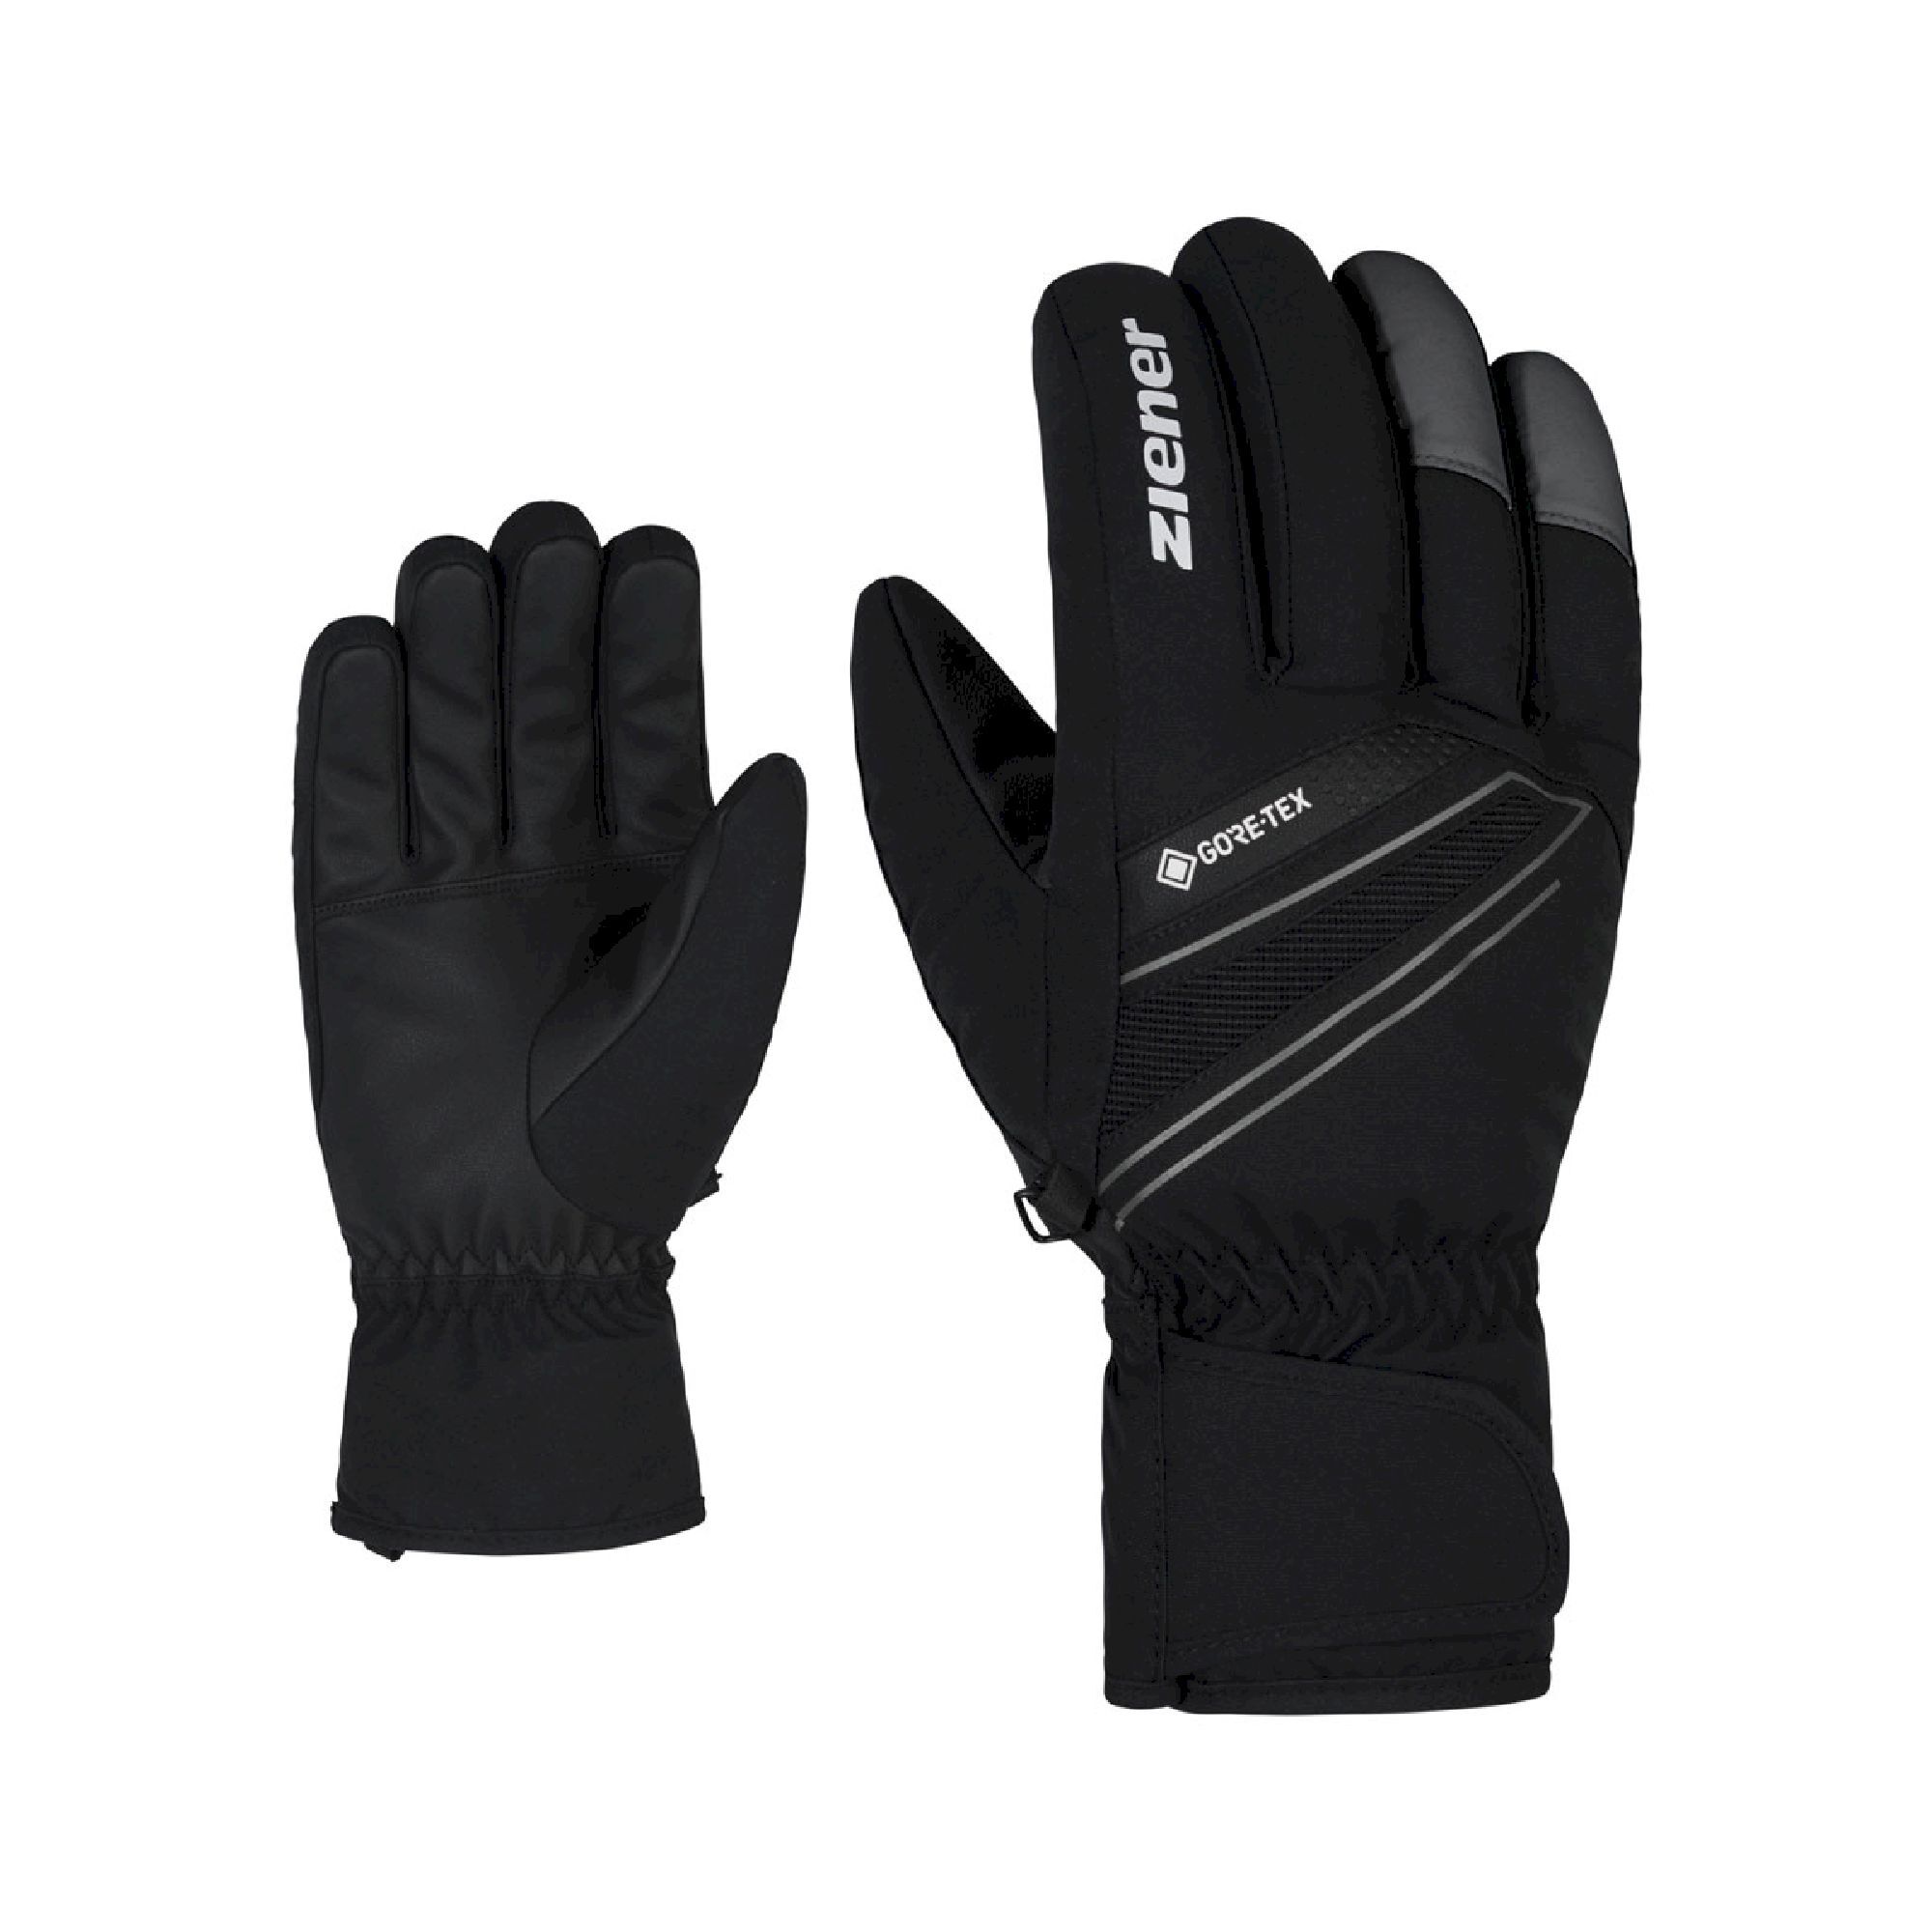 Ziener Gunar GTX - Ski gloves